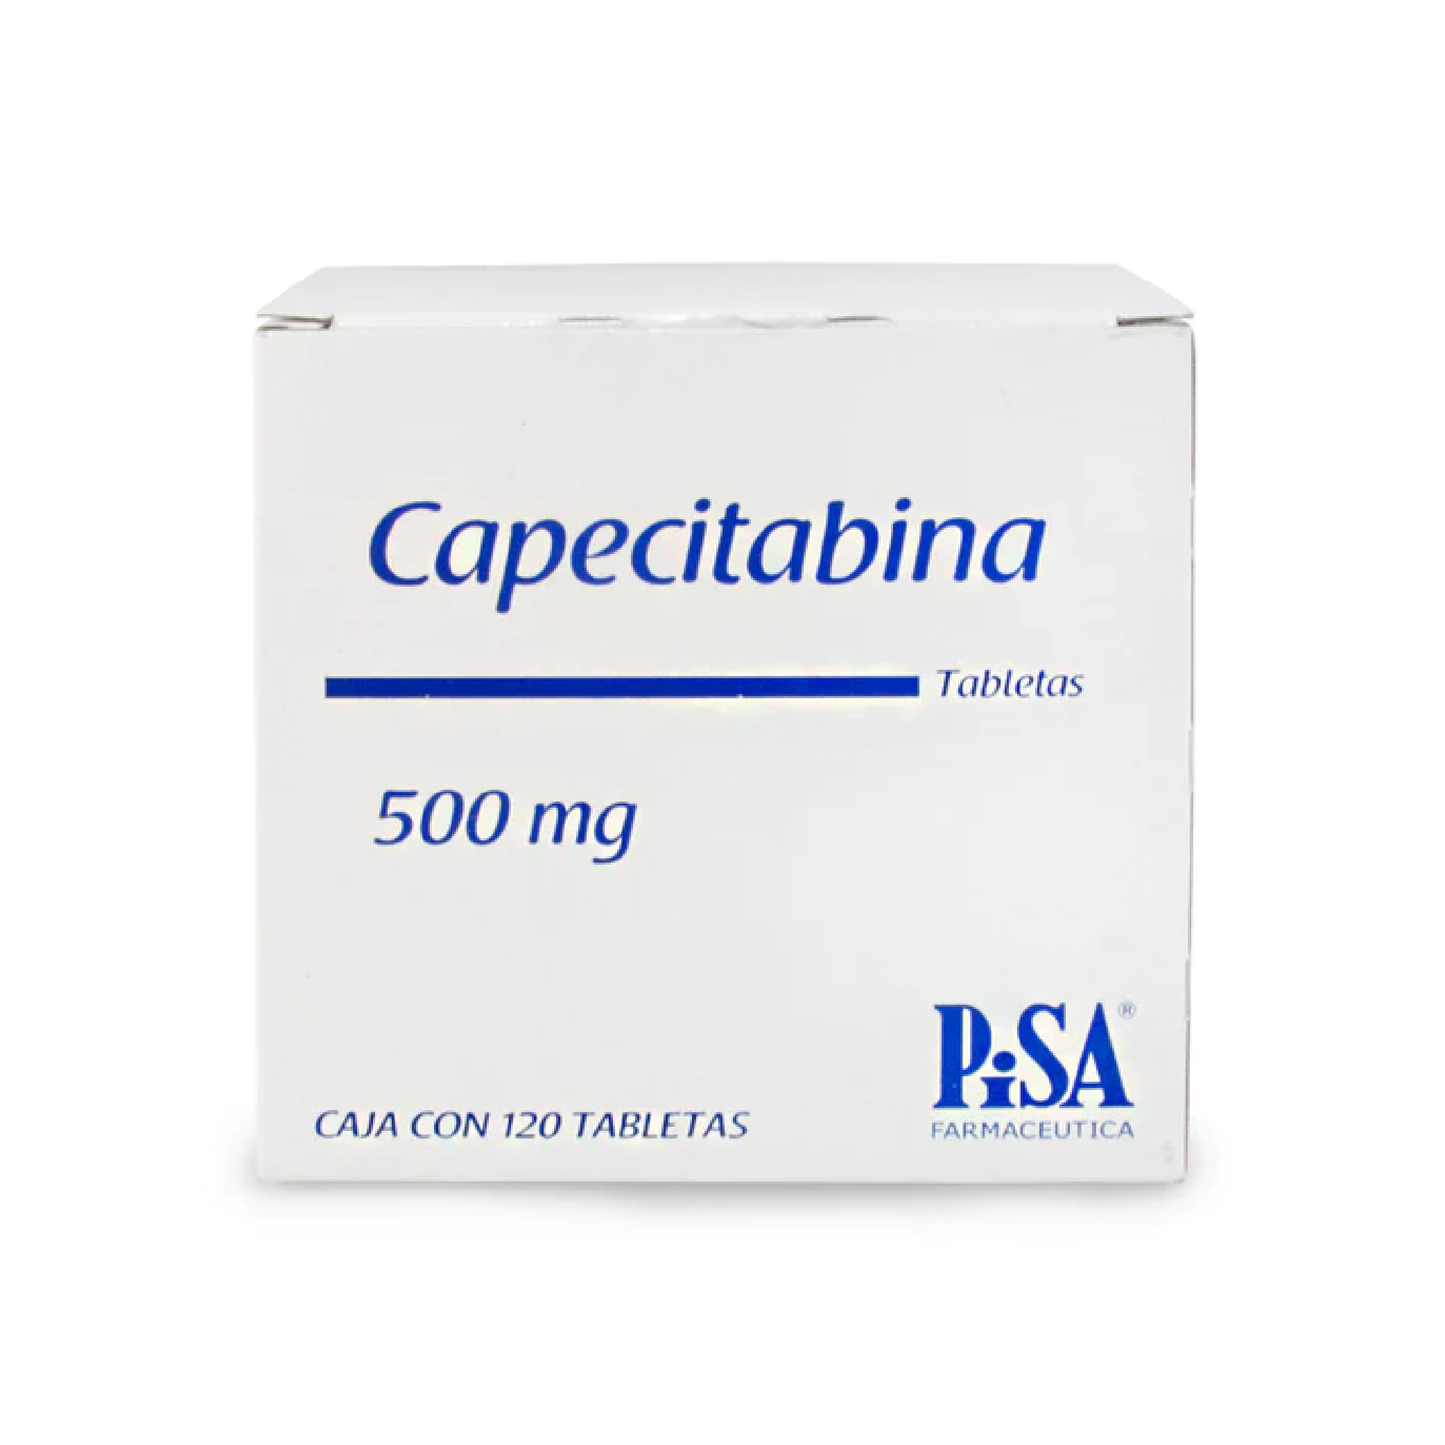 Capecitabina Tabs 500 mg Cja c/120 tabs